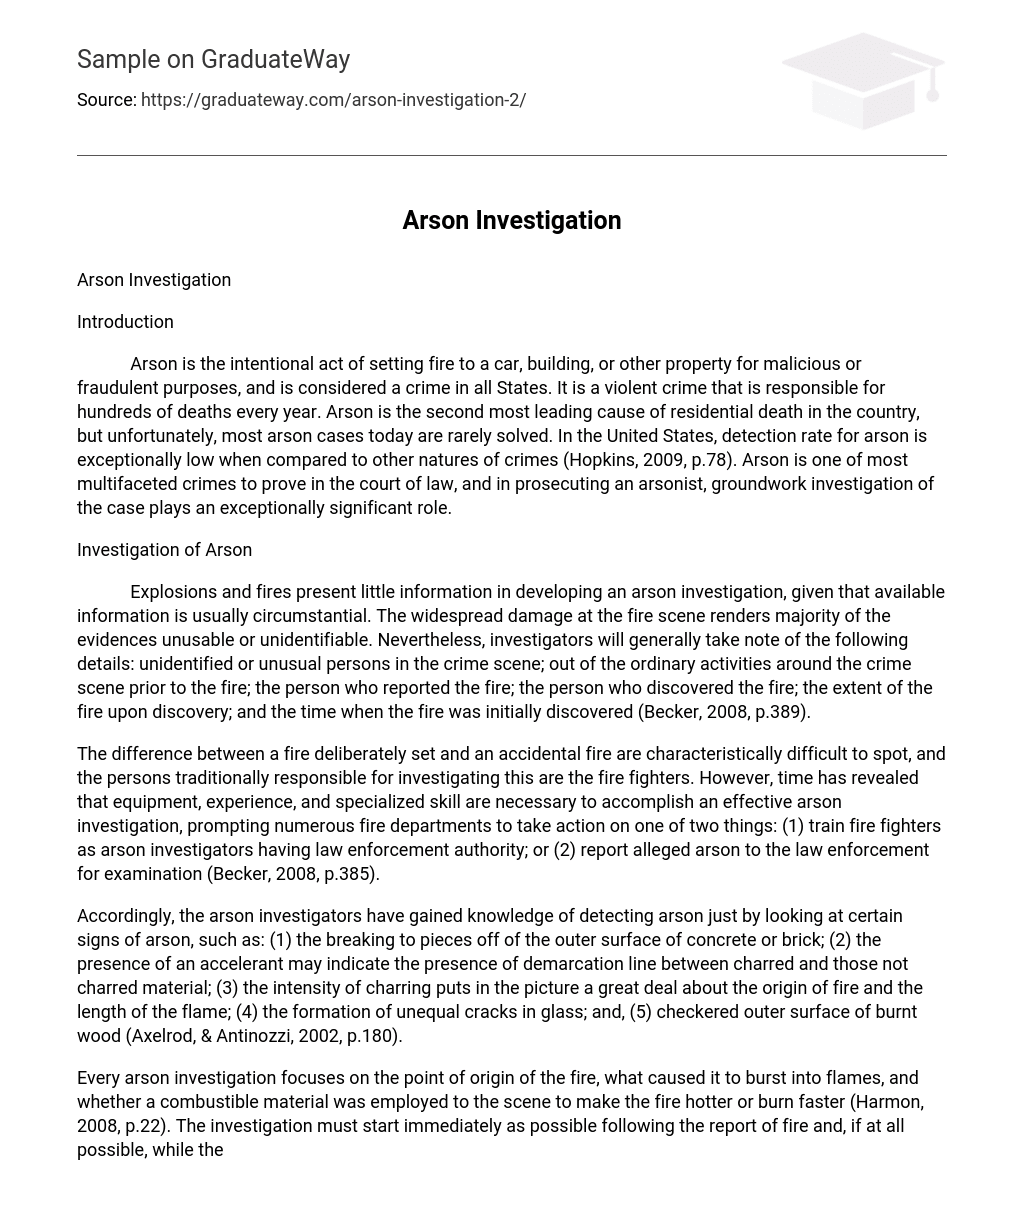 Arson Investigation